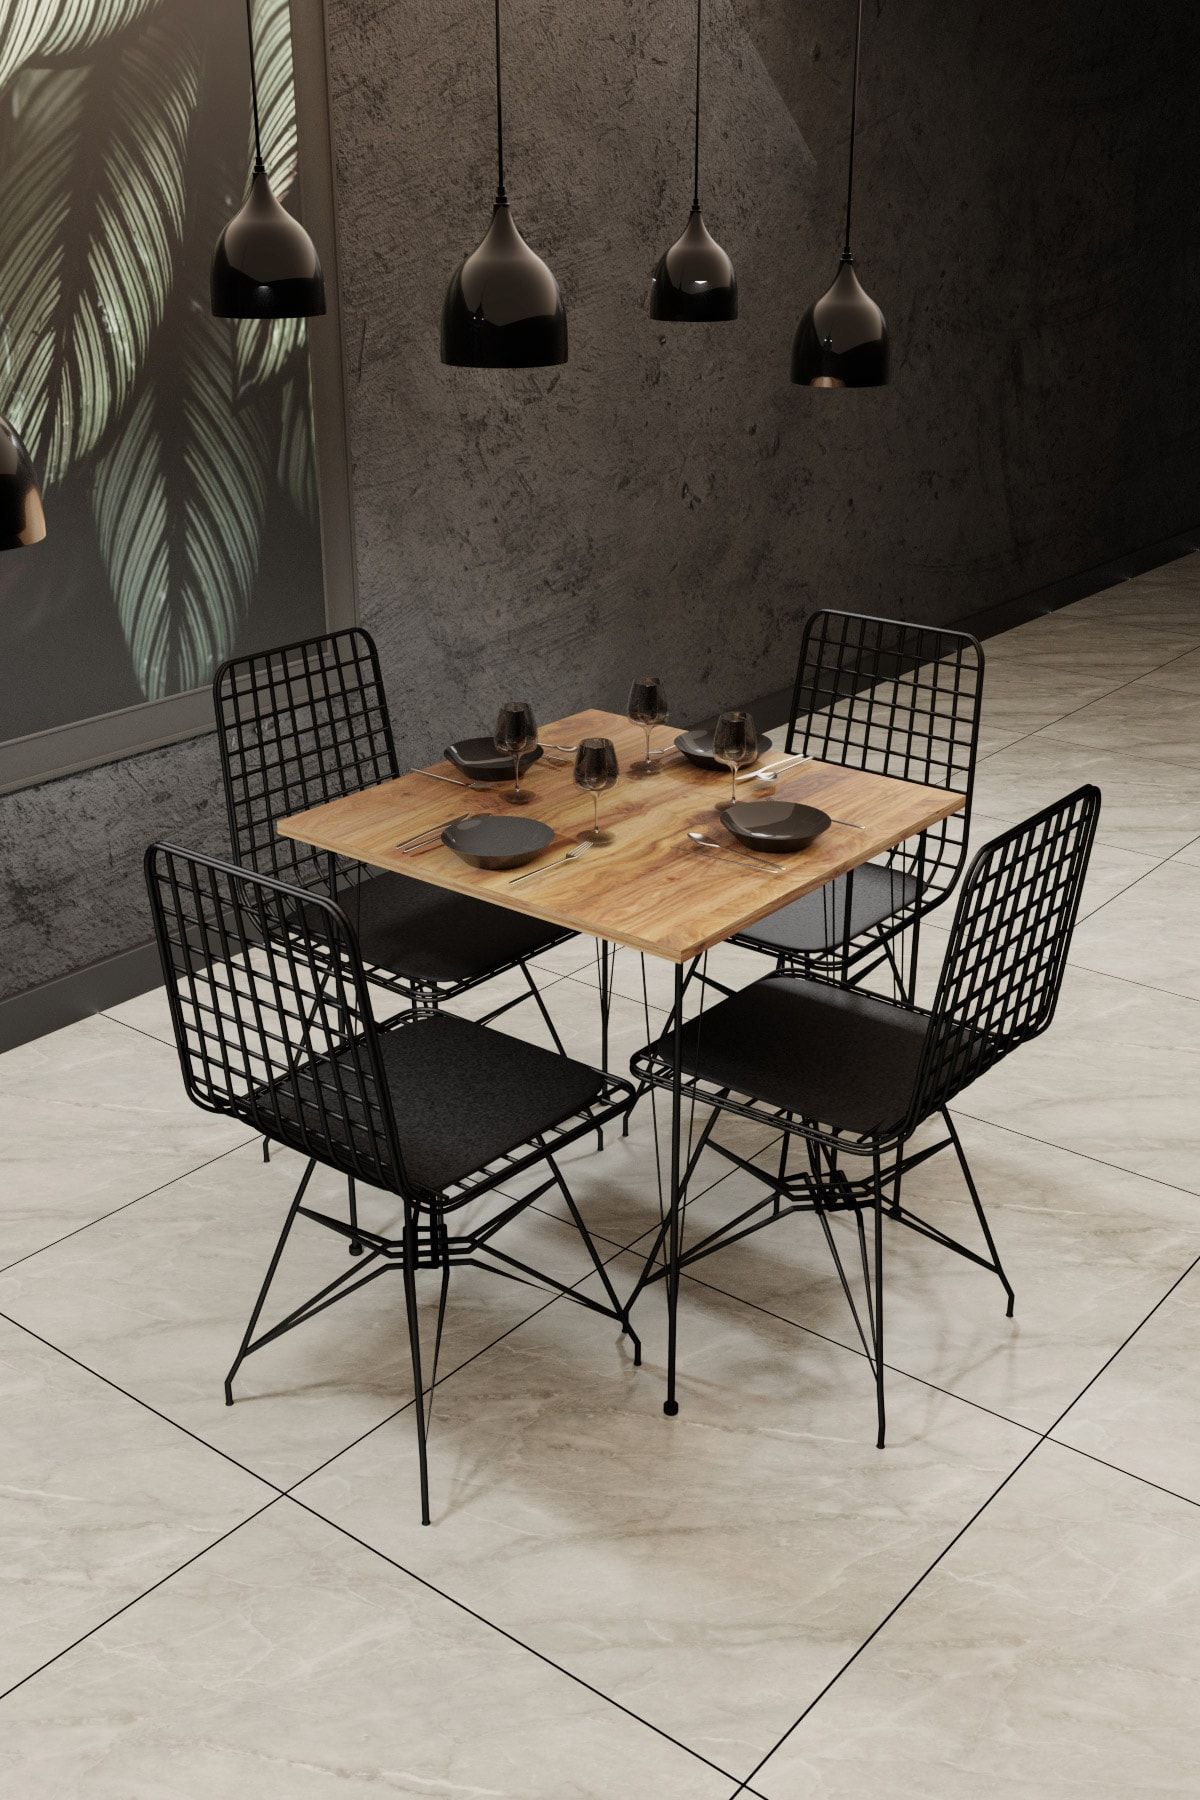 Gaga Mobilya Yemek Masa Takımı Mutfak Masası Cafe Masası 4 Adet Tel Sandalye 1 Adet 70*70 Masa